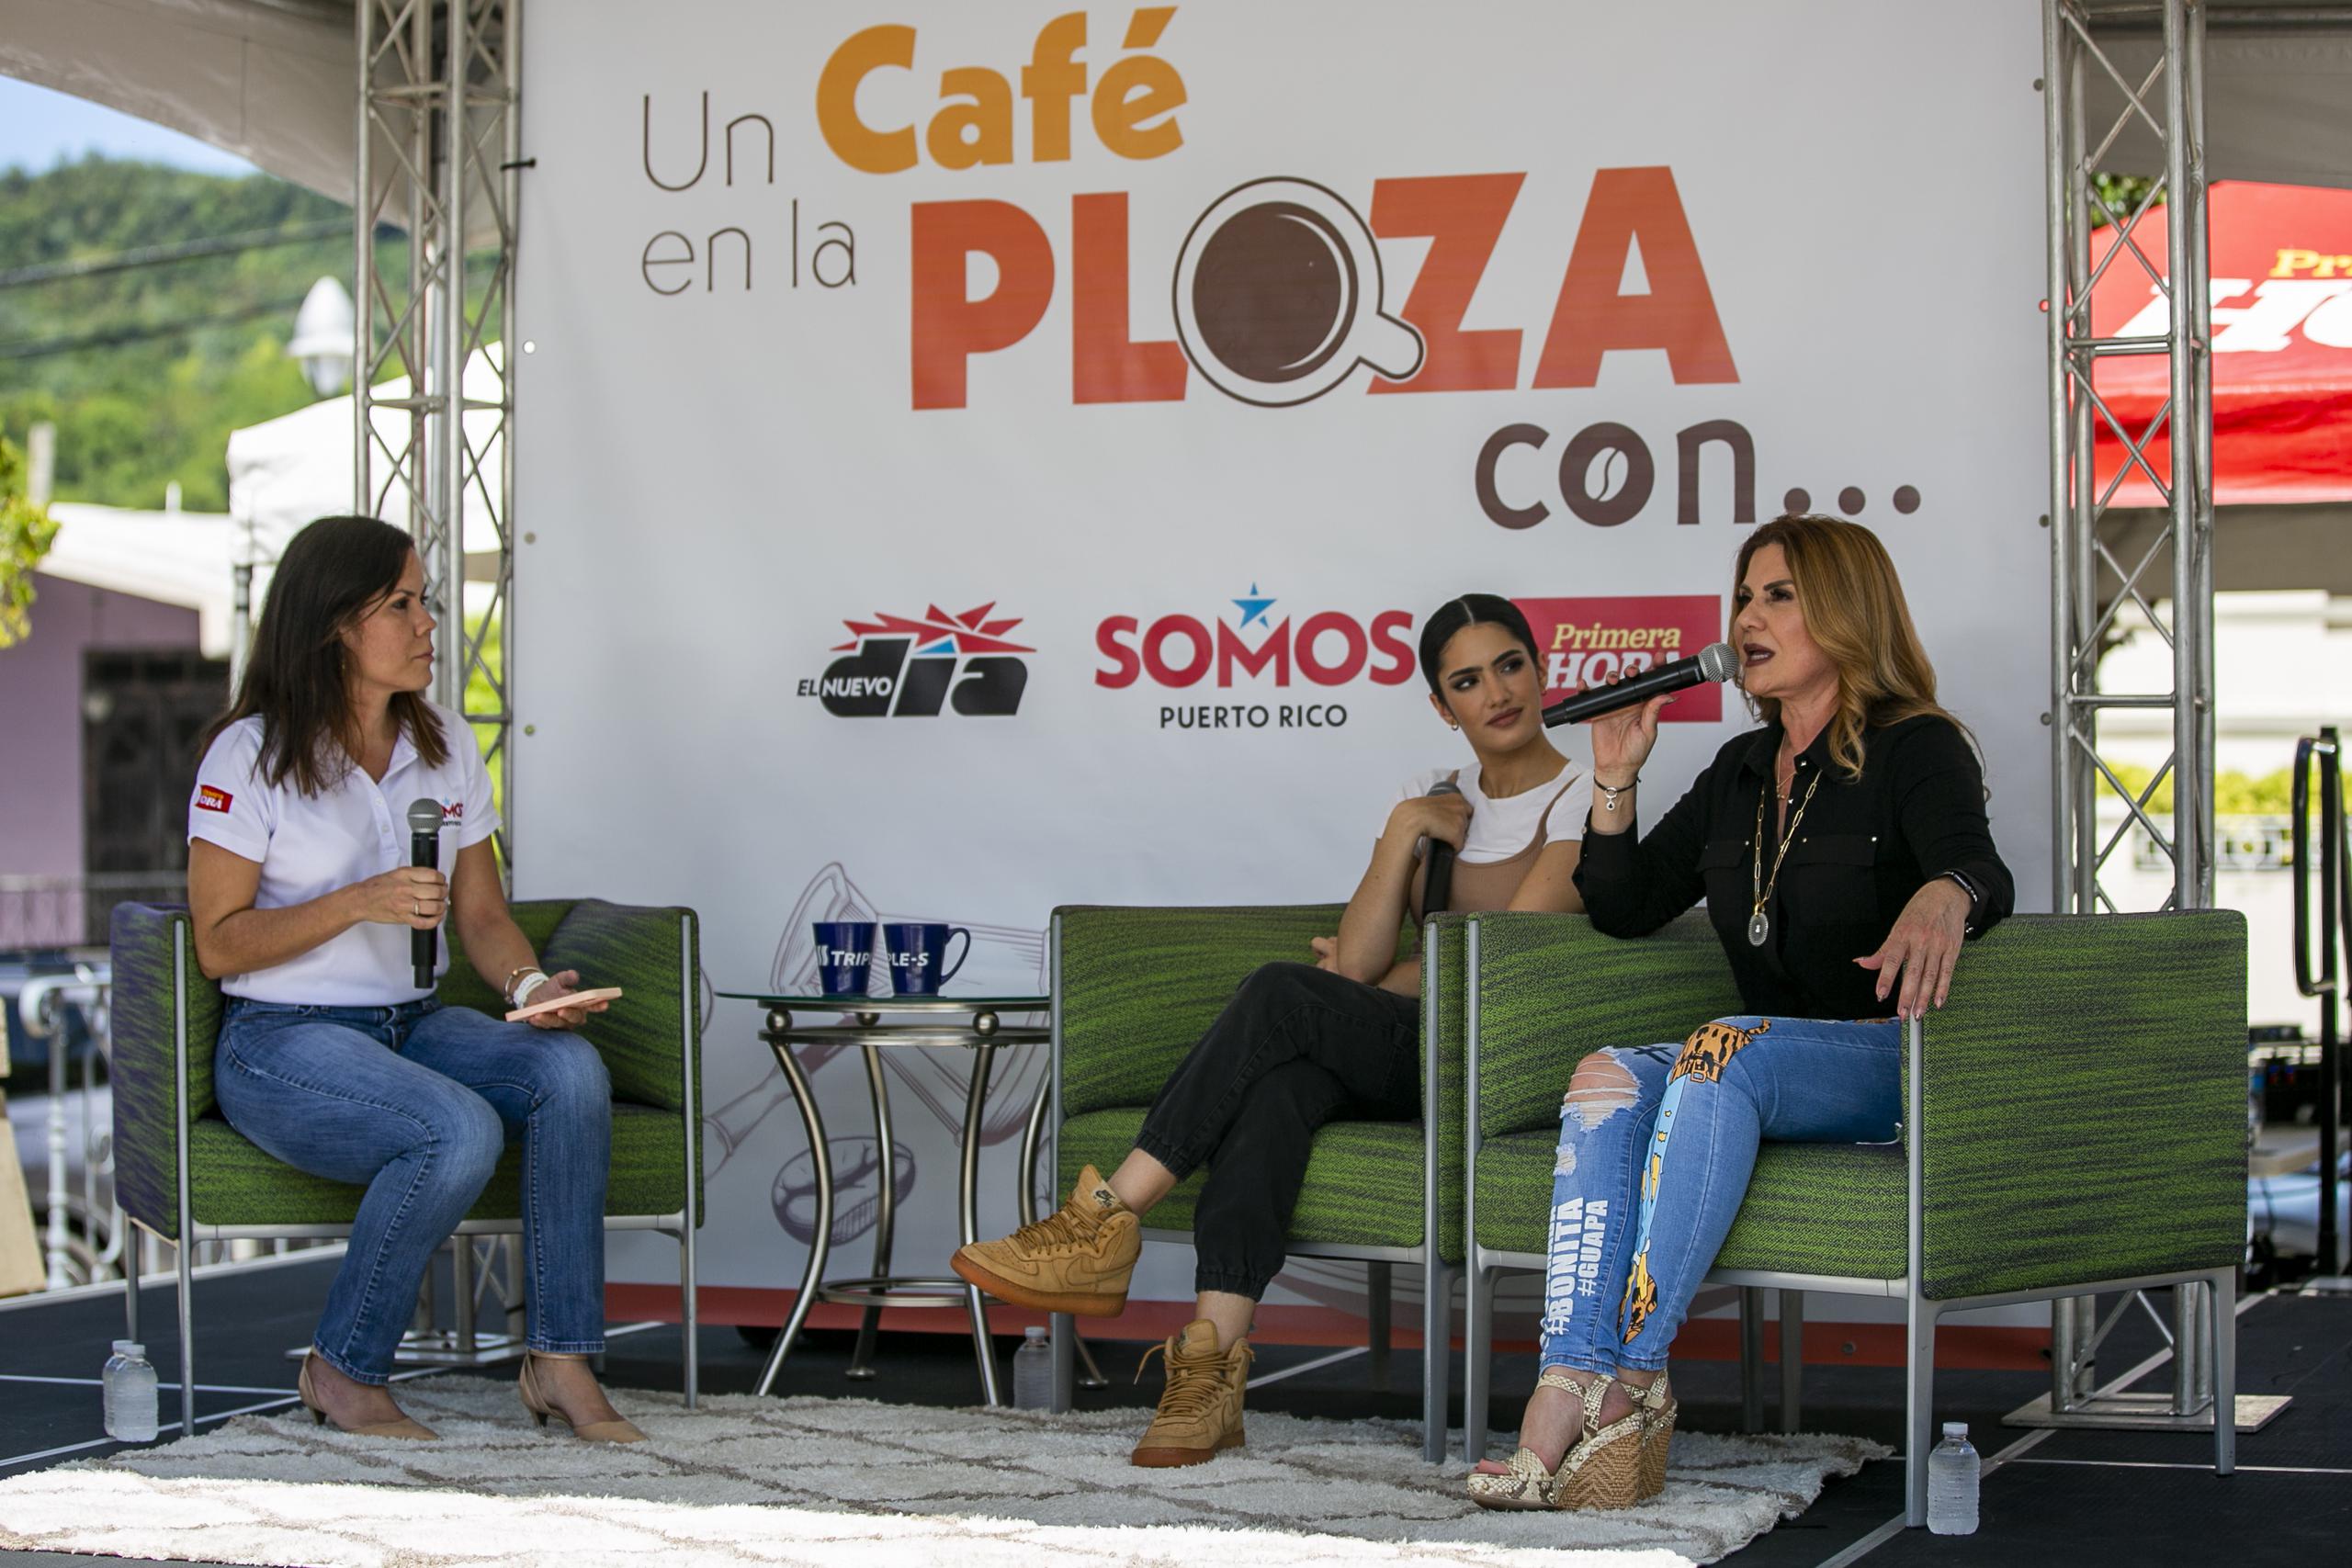 El evento "Un cafe en la plaza", del proyecto Somos Puerto Rico, se efectuó desde la plaza del pueblo de Moca, con Deddie y Didi Romero en una charla con la periodista Rosalina Marrero Rodríguez.

Xavier Garcia / Fotoperiodista